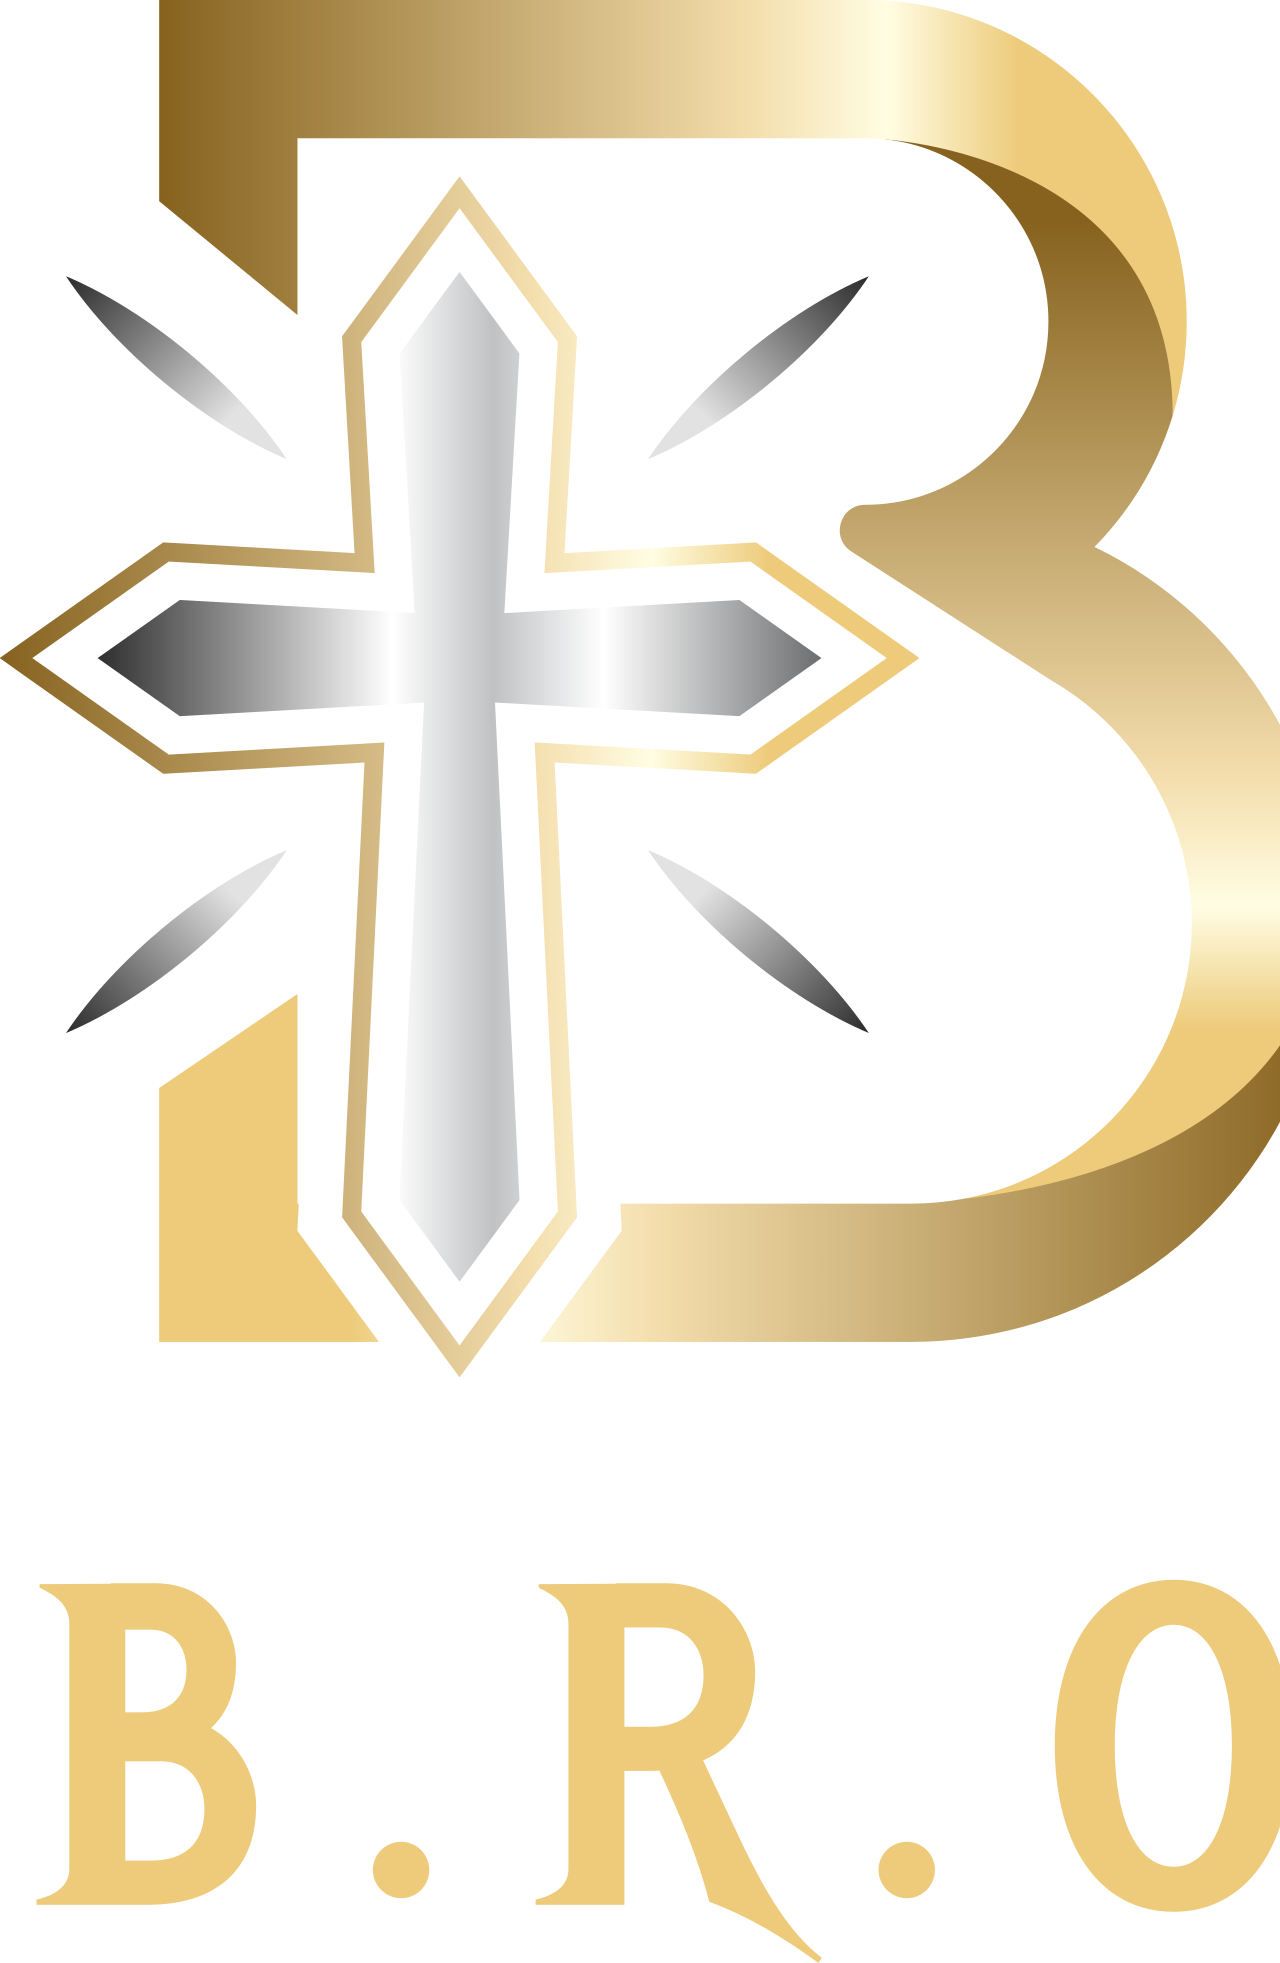 B.R.O.'s logo